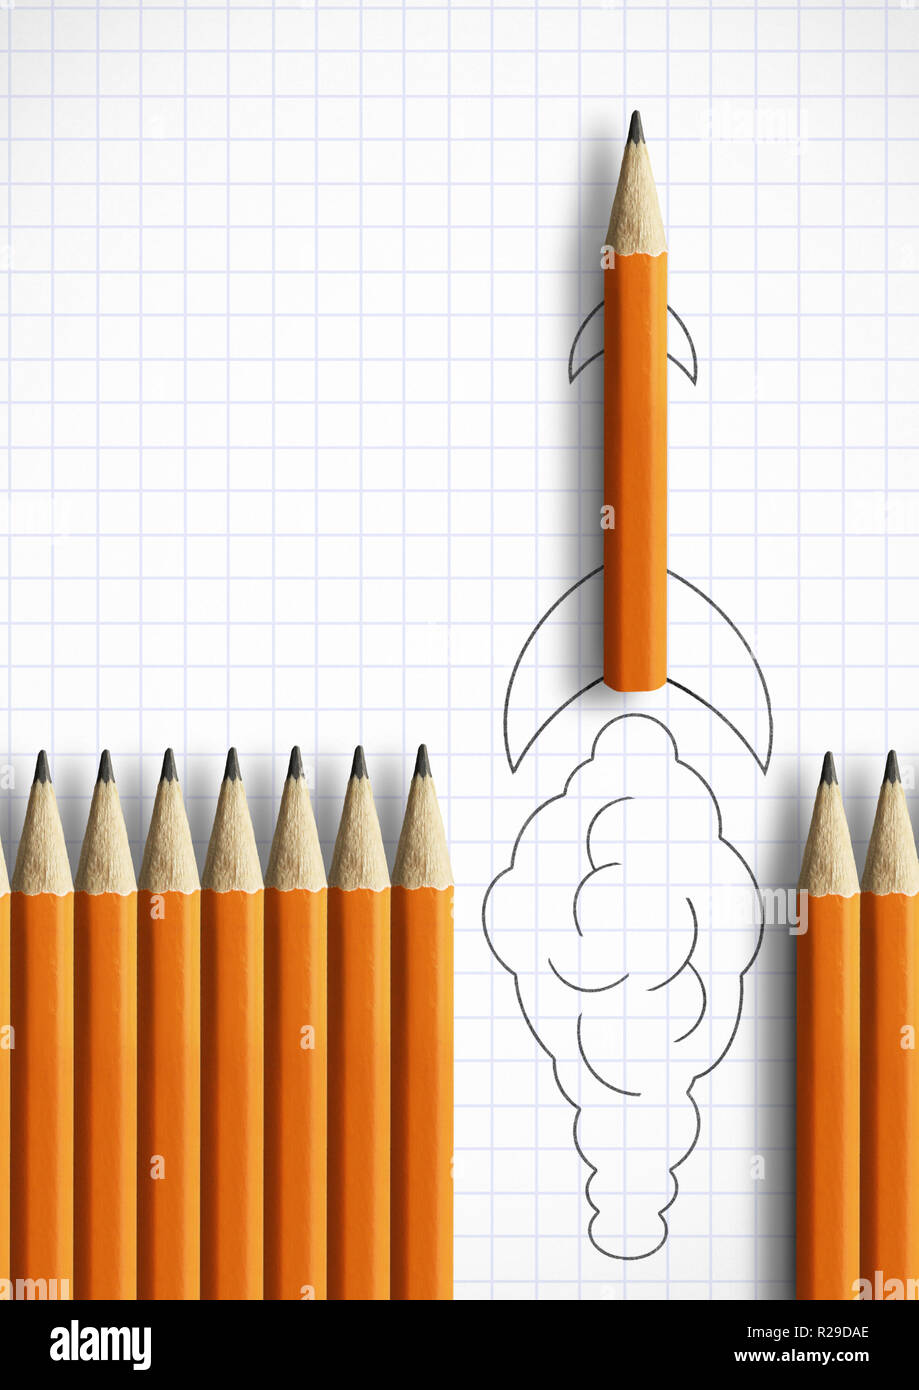 Démarrez idée concept créatif, crayon tant rocket Banque D'Images